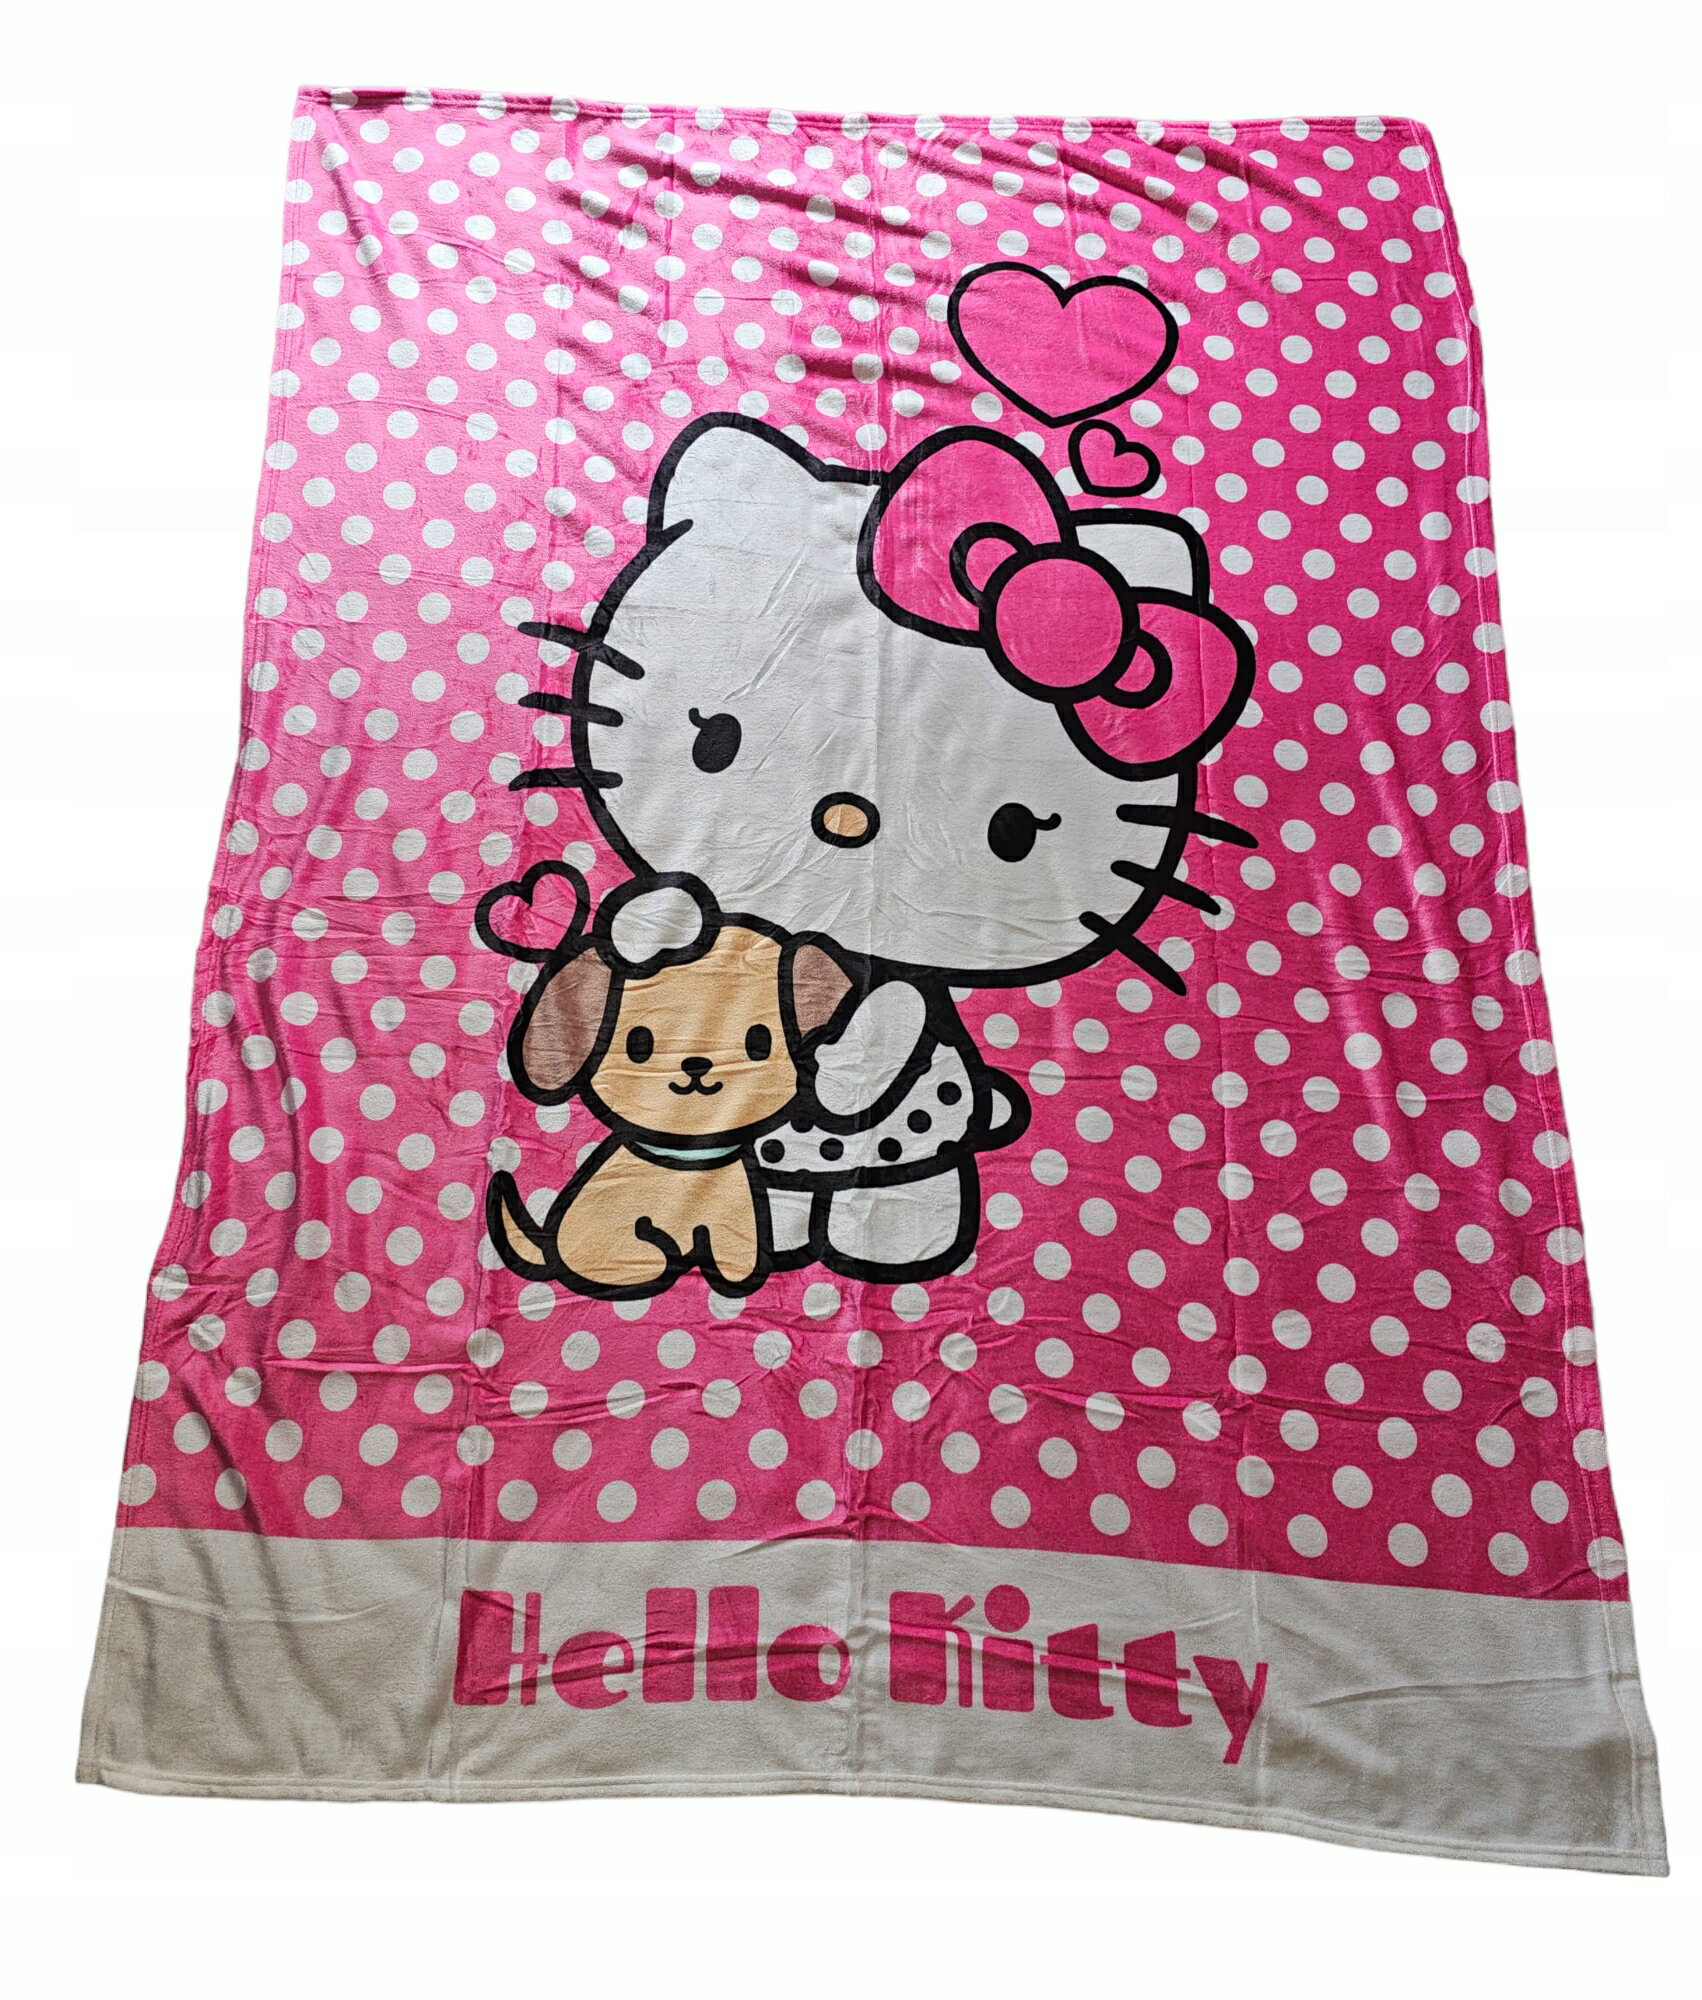 Hello Kitty ハローキティ フリース ブランケット 毛布 ひざ掛け 130cm x 170cm